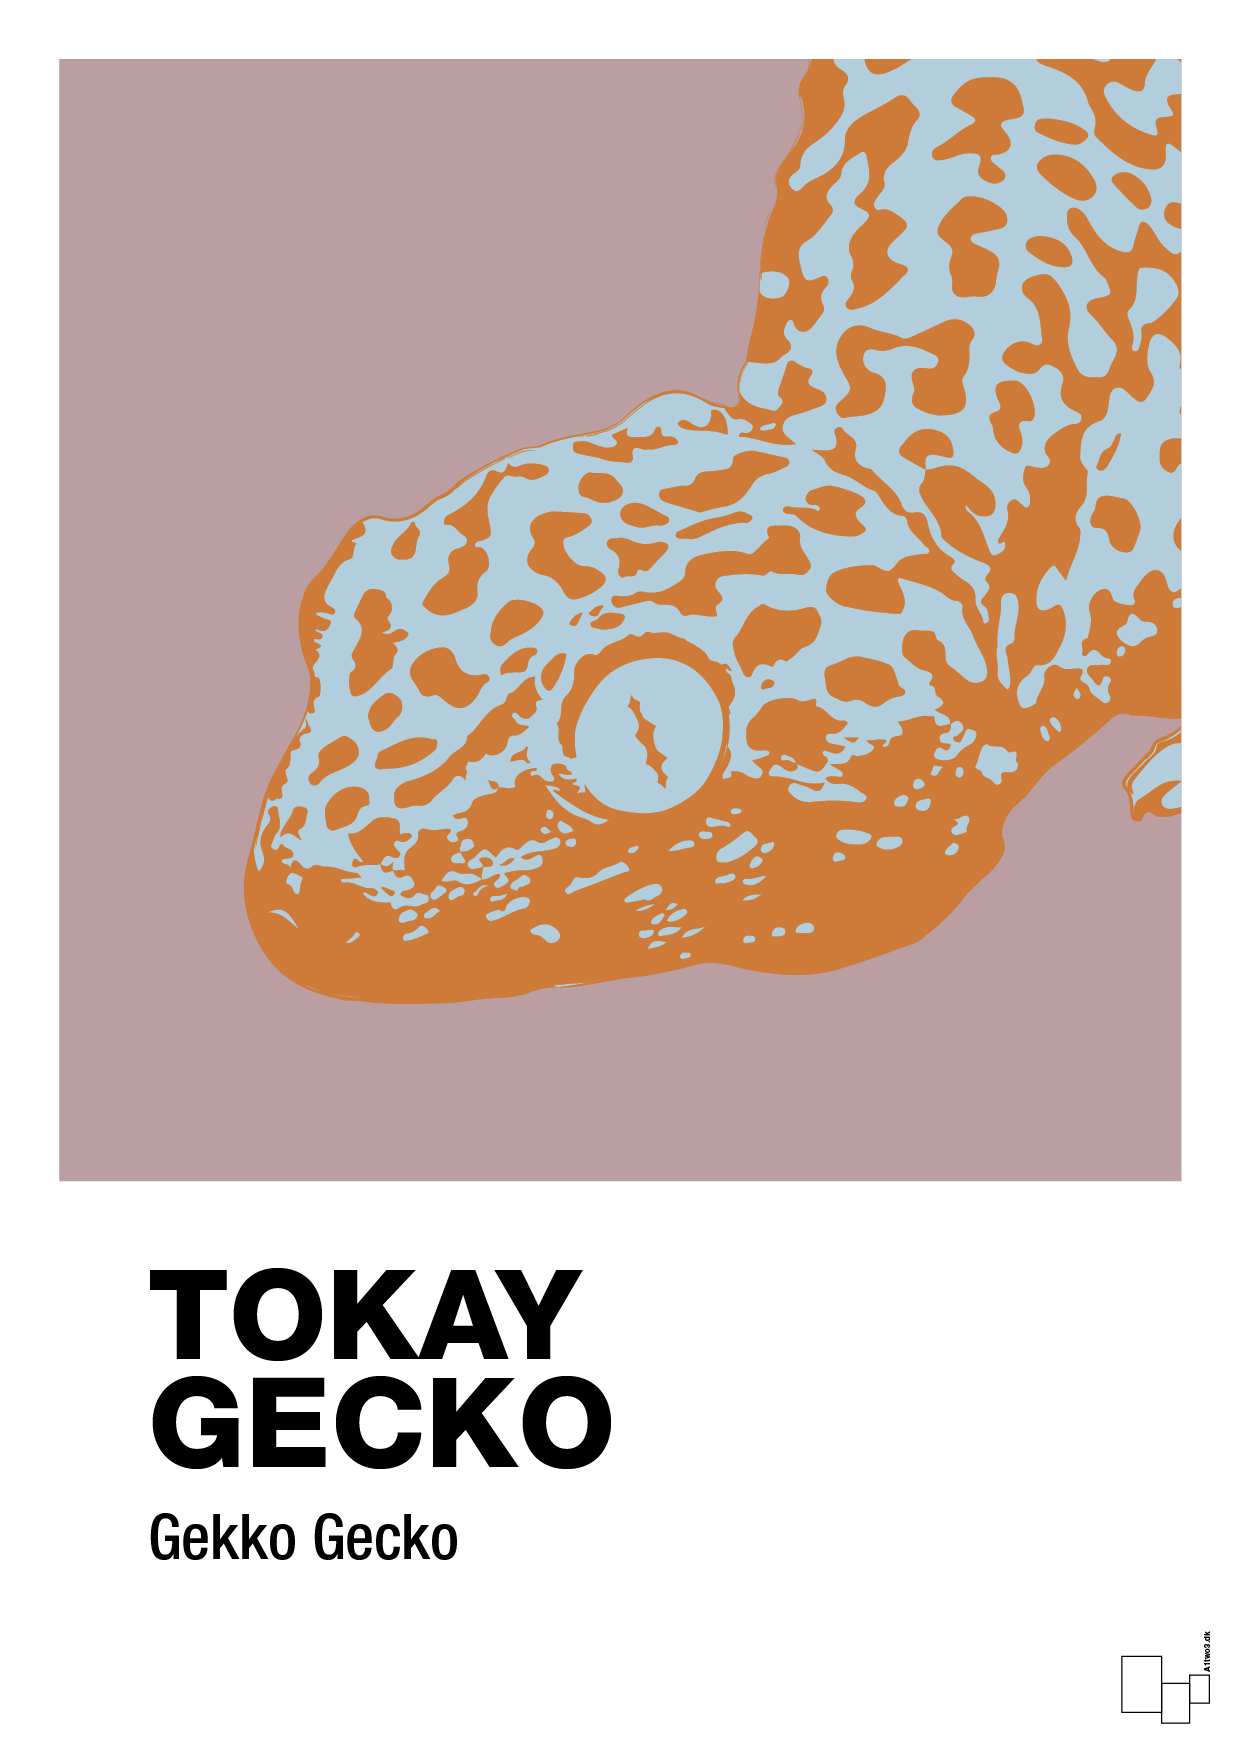 tokay gecko - Plakat med Videnskab i Light Rose